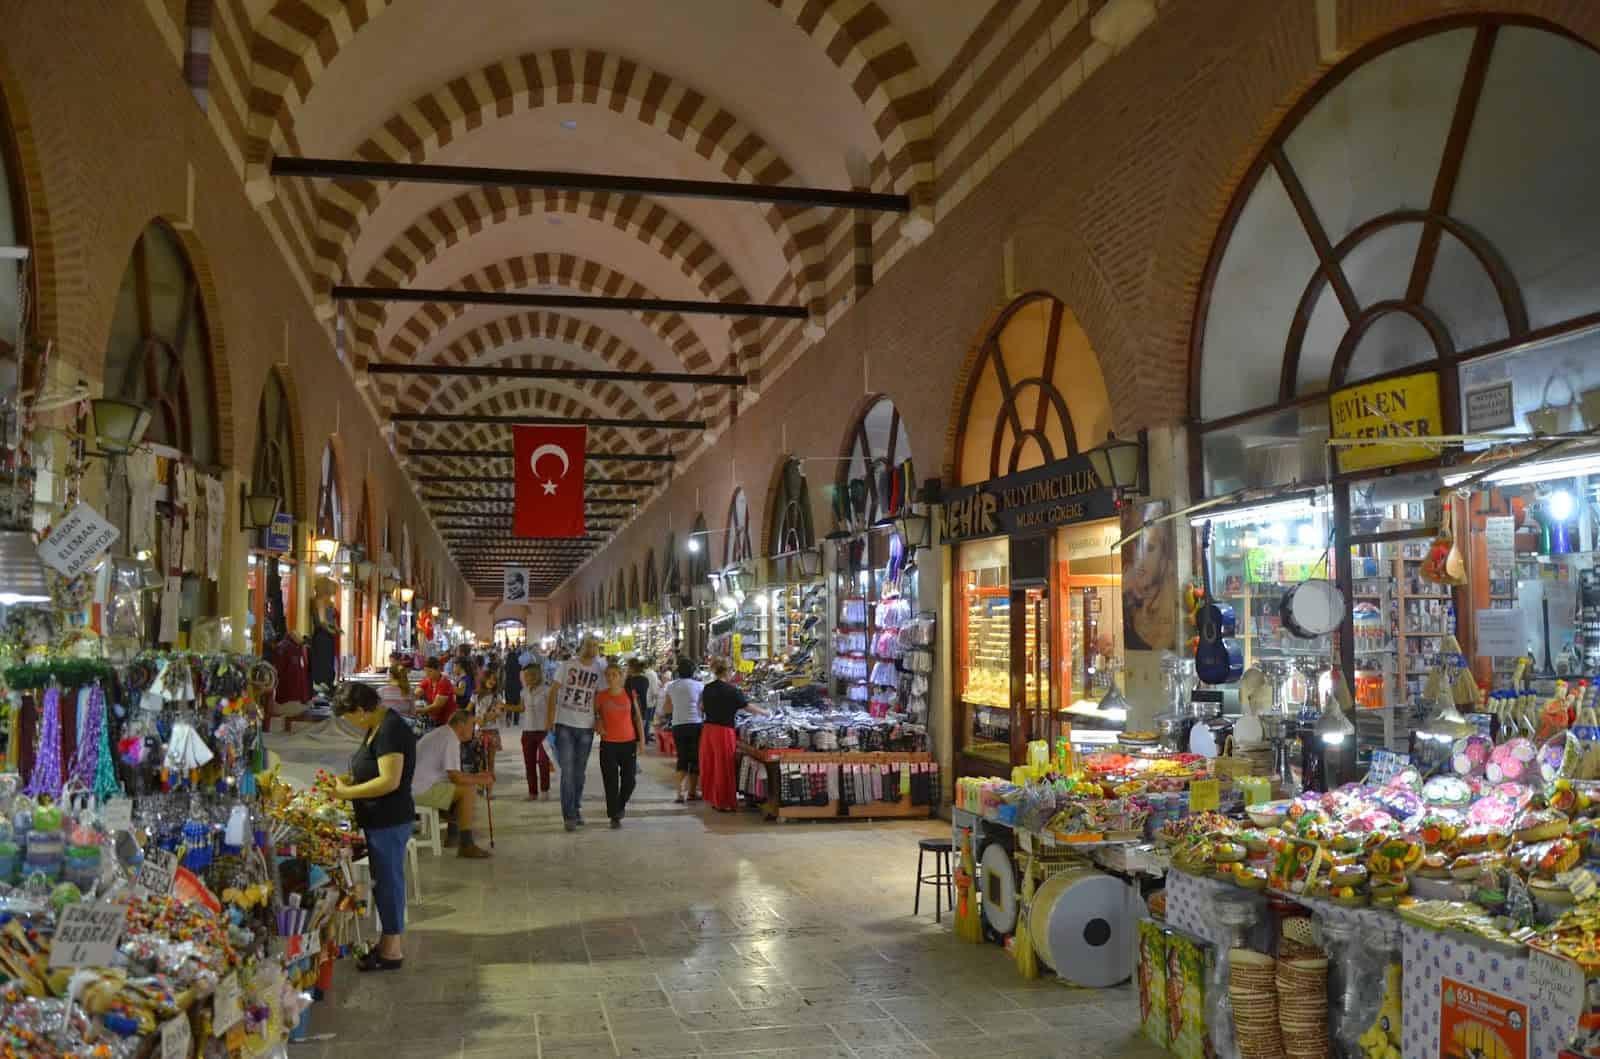 Ali Pasha Bazaar in Edirne, Turkey